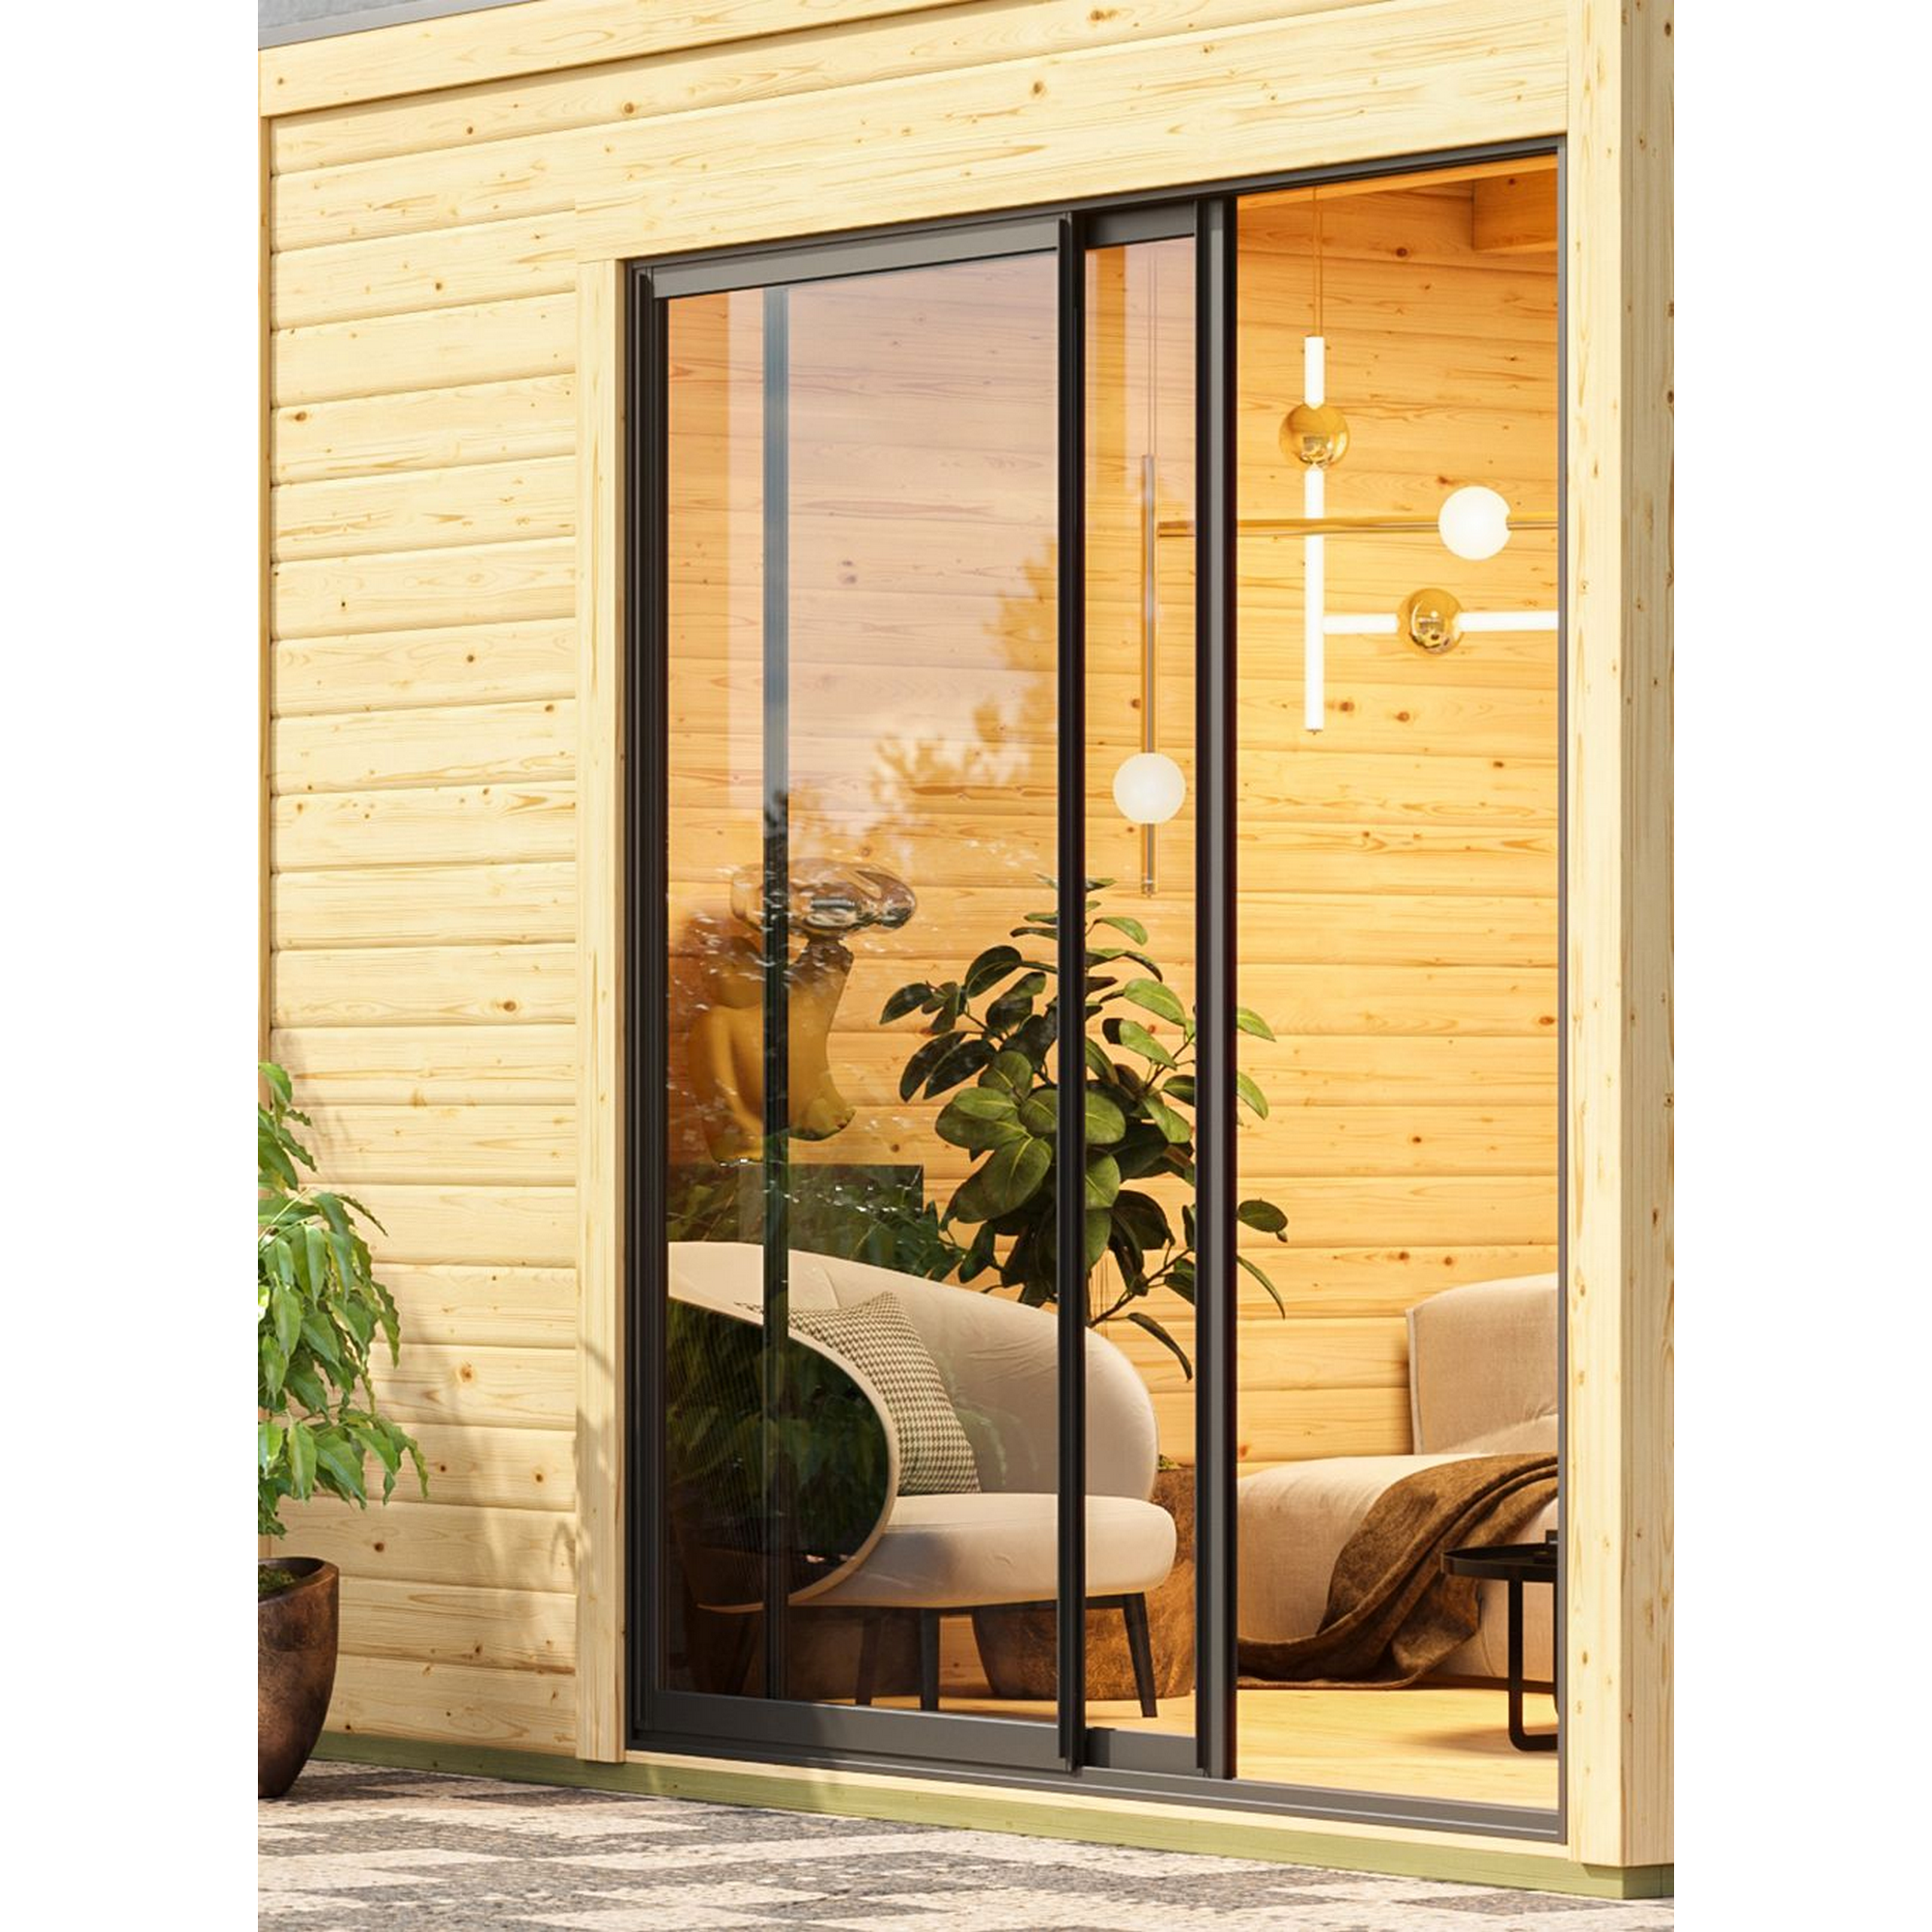 Gartenhaus mit Sauna 'Enrique 1 Variante B' anthrazit 9 kW Ofen externe Steuerung 308 x 308 x 242 cm + product picture